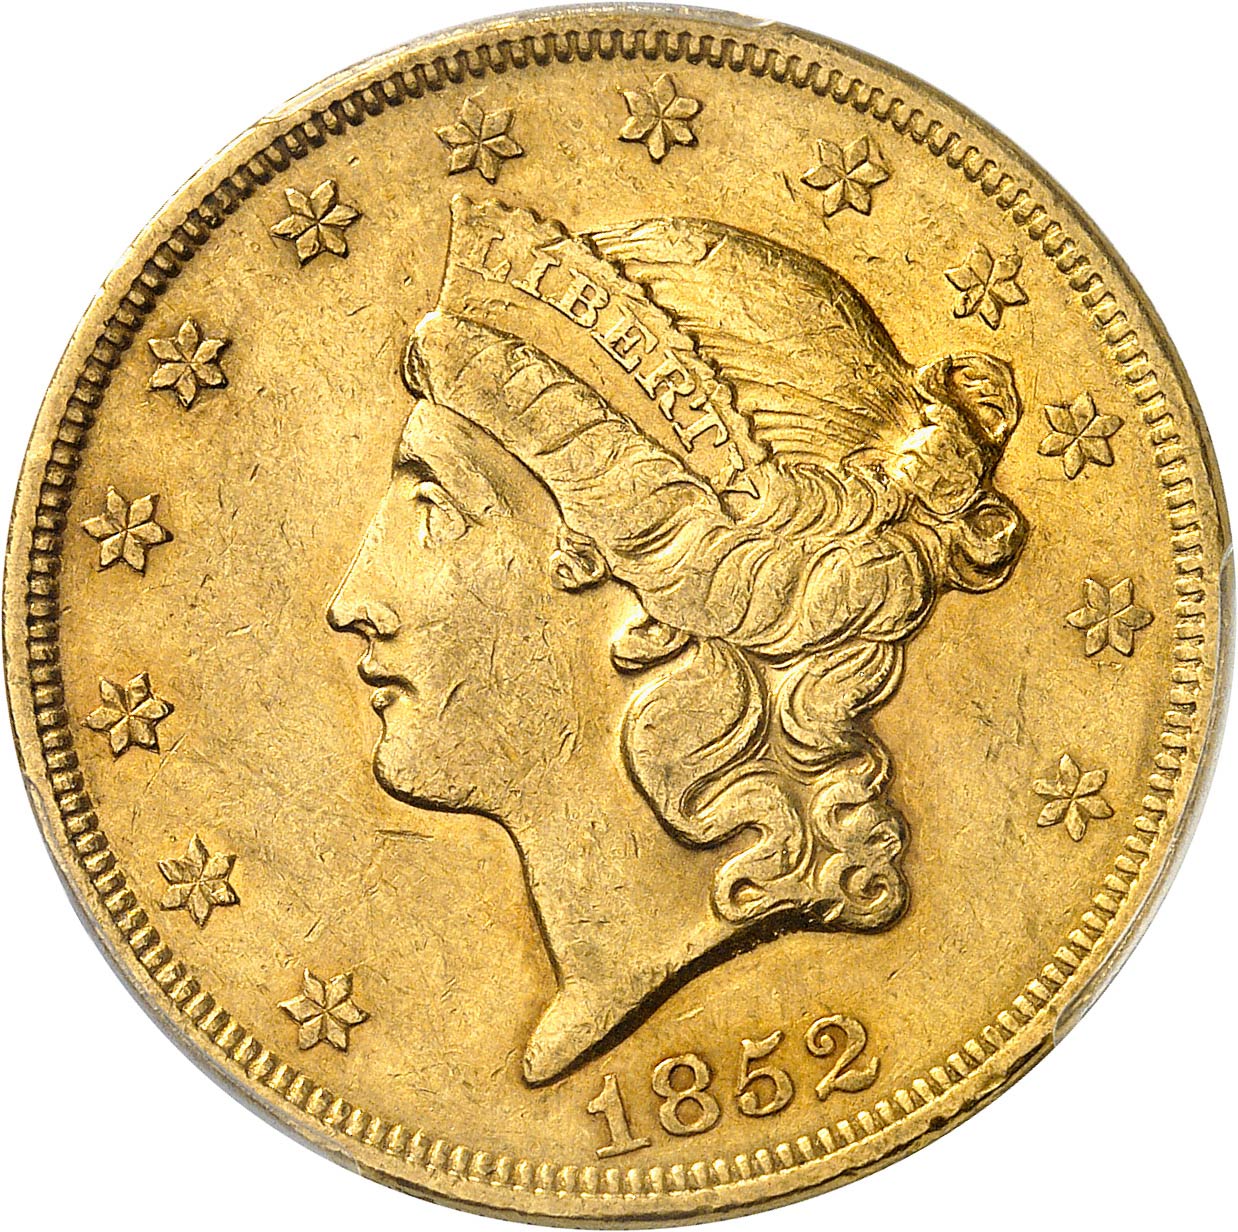 Numismatique : une collection de 510 pièces d'or retraçant l'histoire du  monde en vente à Montluçon